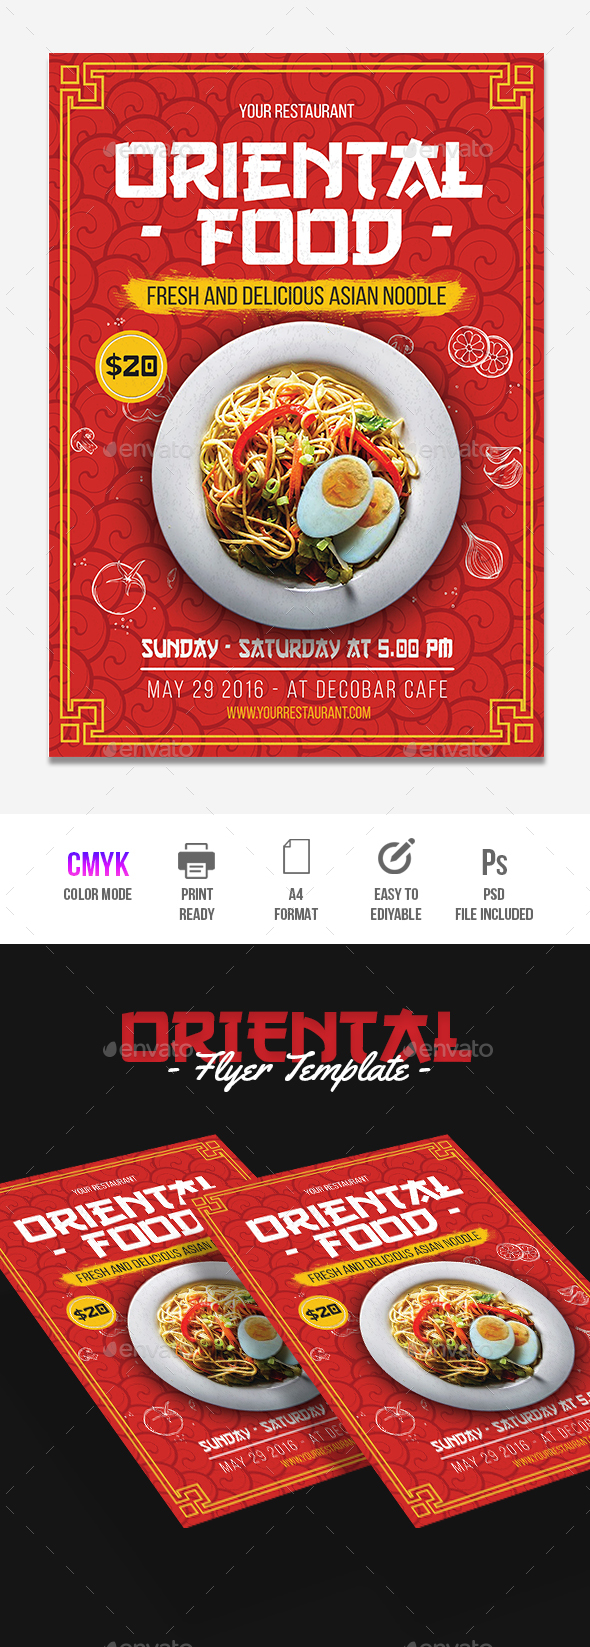 Chinese Restaurant Flyer